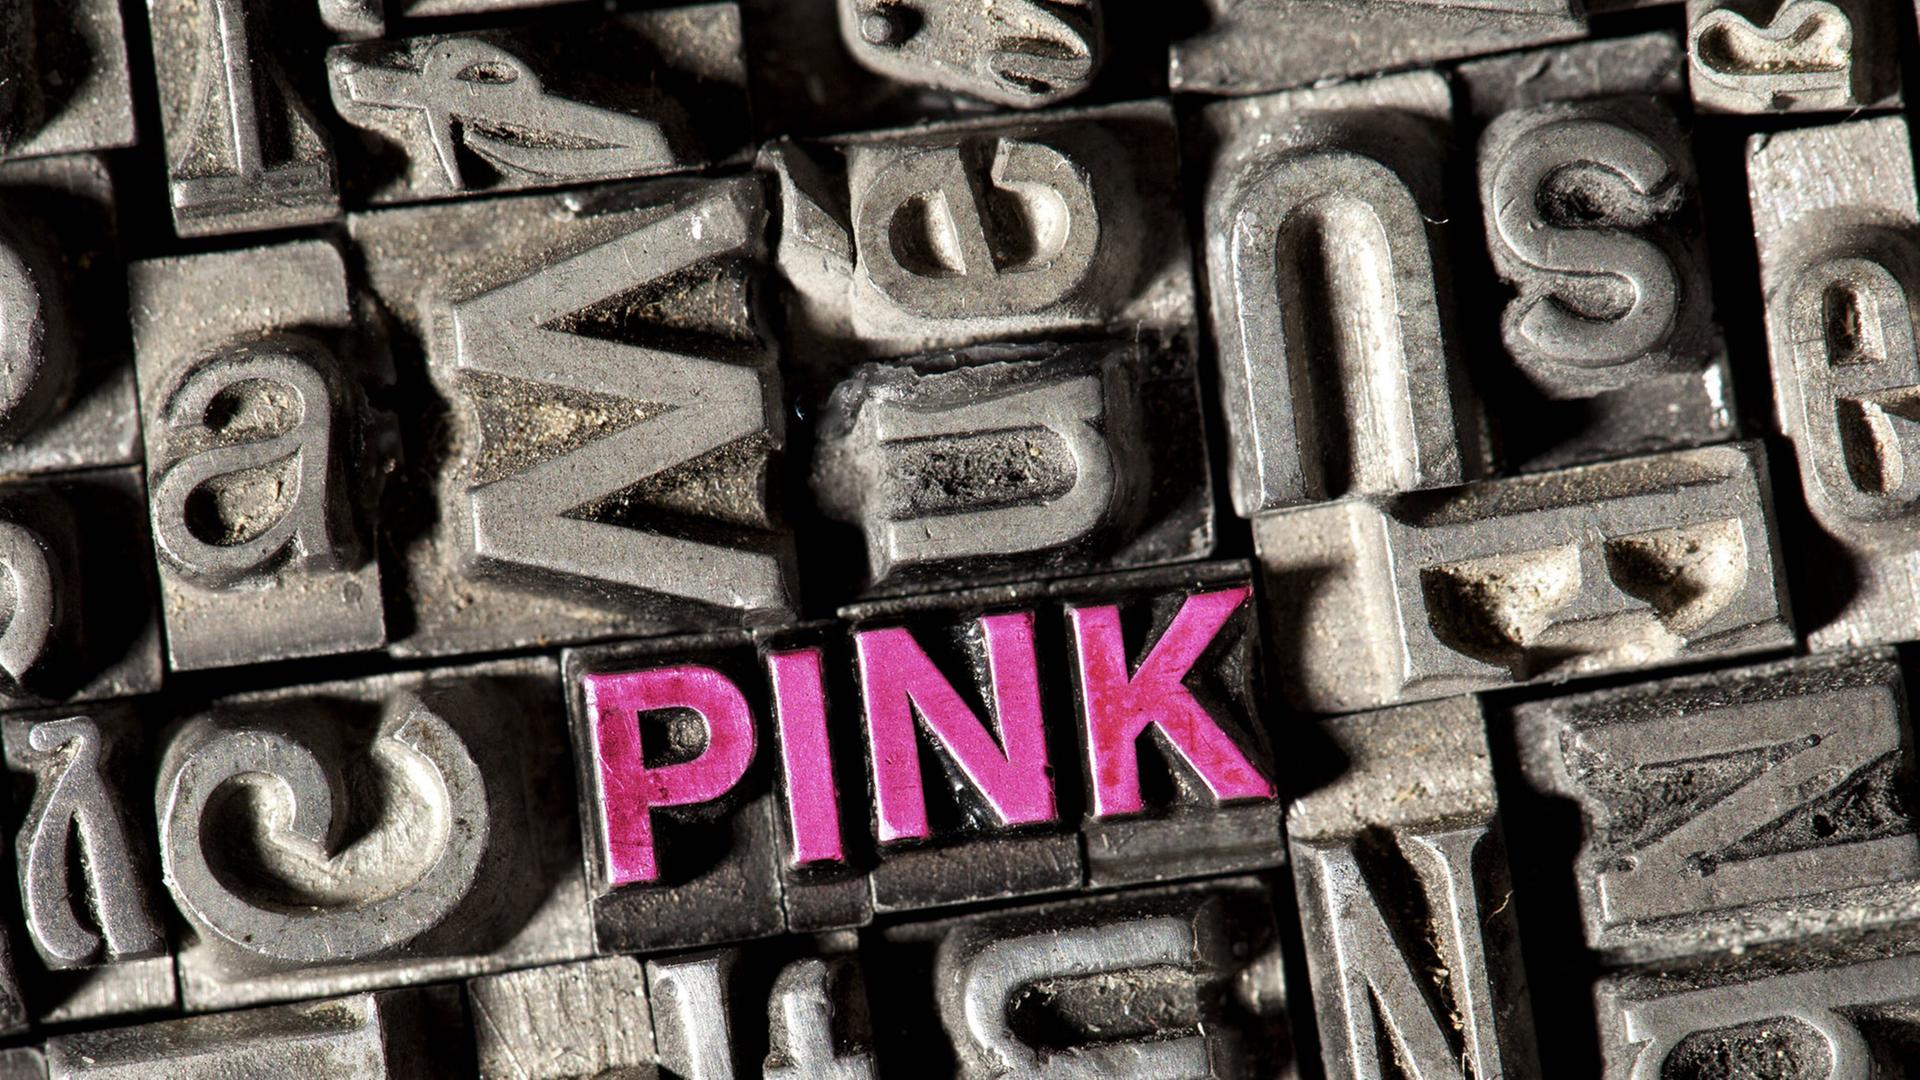 Setzkasten mit Bleilettern, darunter die Buchstaben des Wortes "pink" in rosa